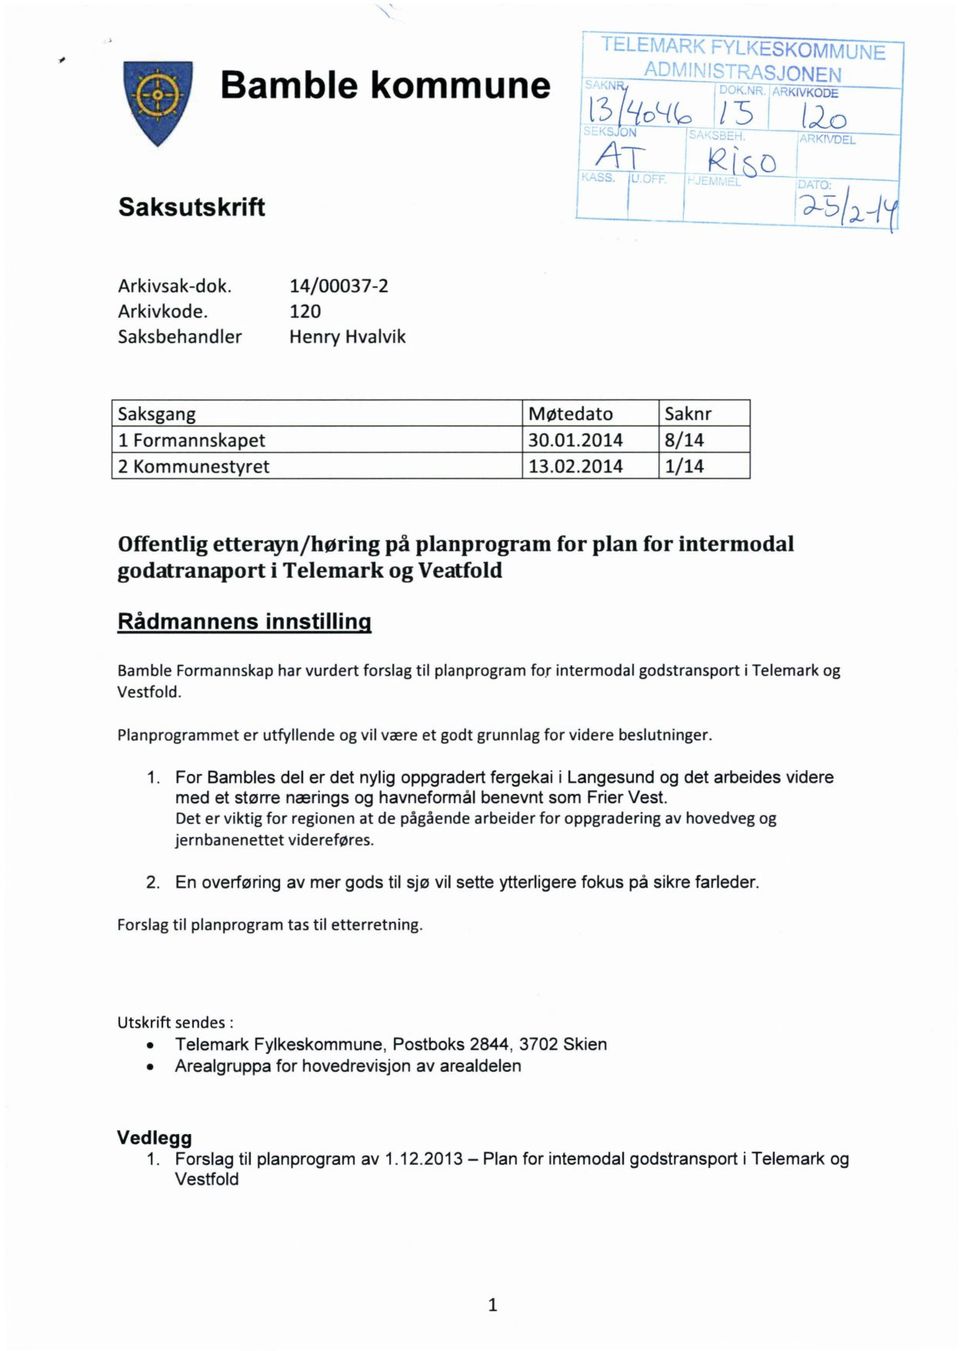 2014 1/14 Offentlig etterayn /høring på planprogram for plan for intermodal godatranaport i Telemark og Veatfold Rådmannens innstillinq Bamble Formannskap har vurdert forslag til planprogram for